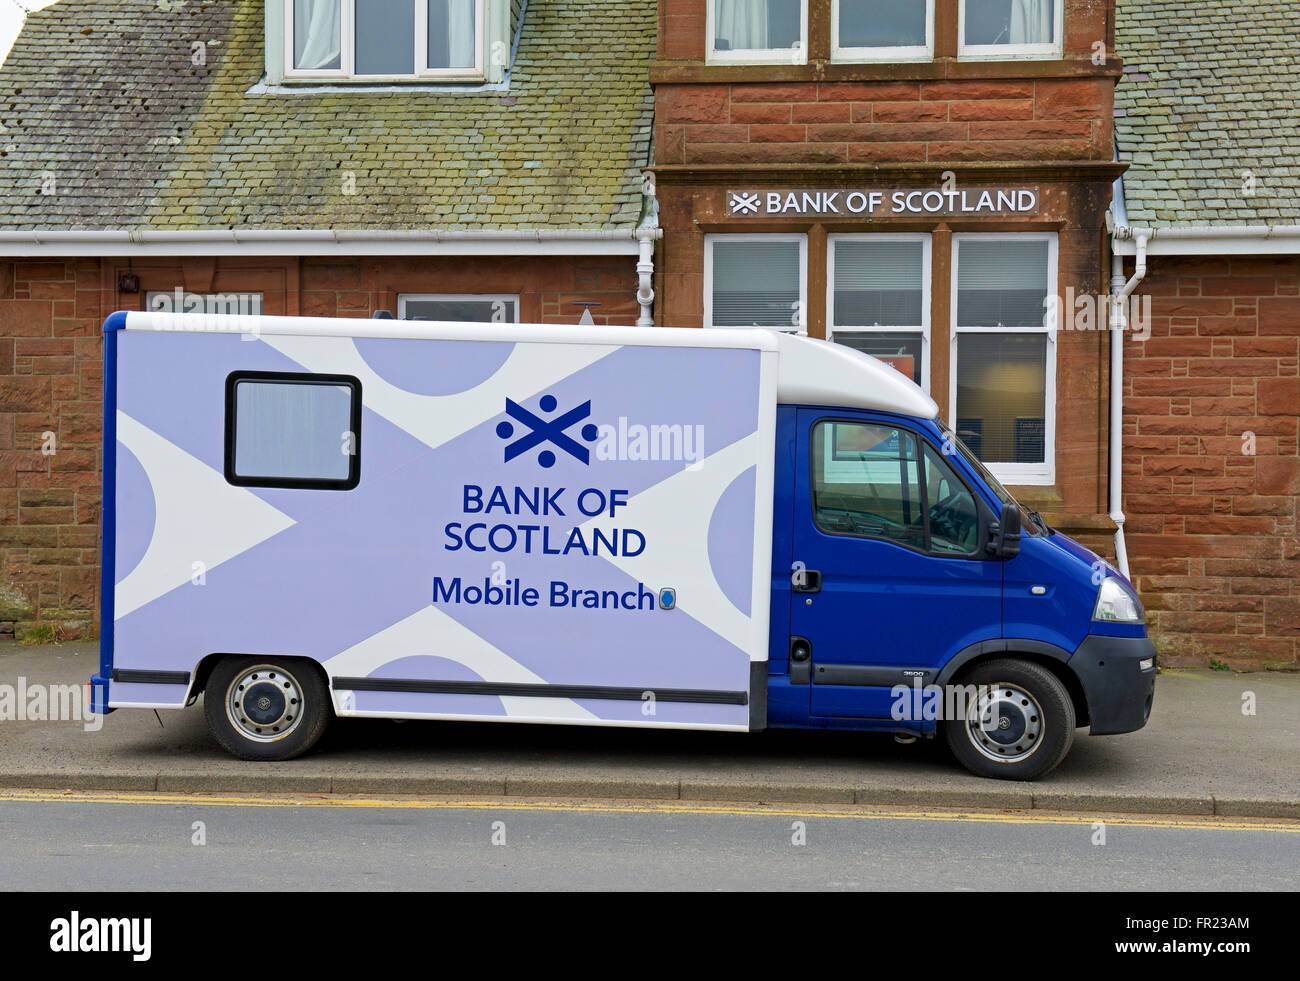 Mobile-Bank of Scotland van außerhalb der Filiale der Bank, Brodick, Isle of Arran, North Ayrshire, Schottland, Vereinigtes Königreich Stockfoto